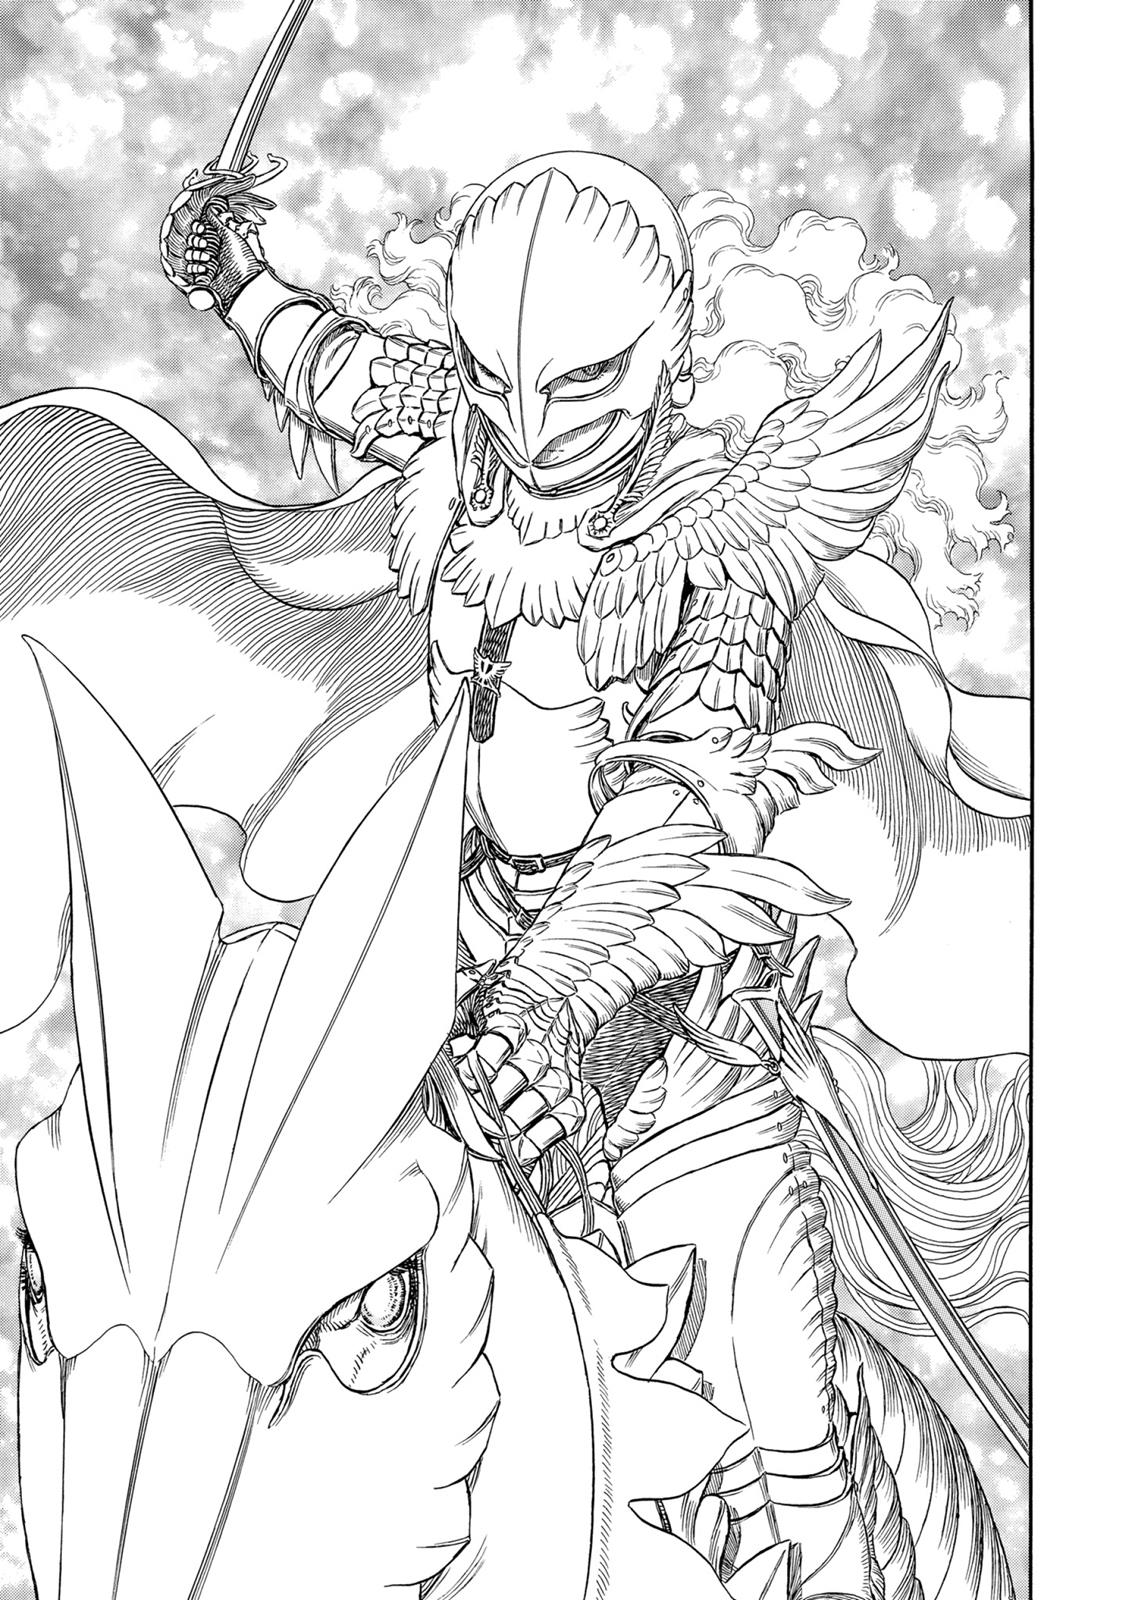 Berserk Manga Chapter 302 image 02